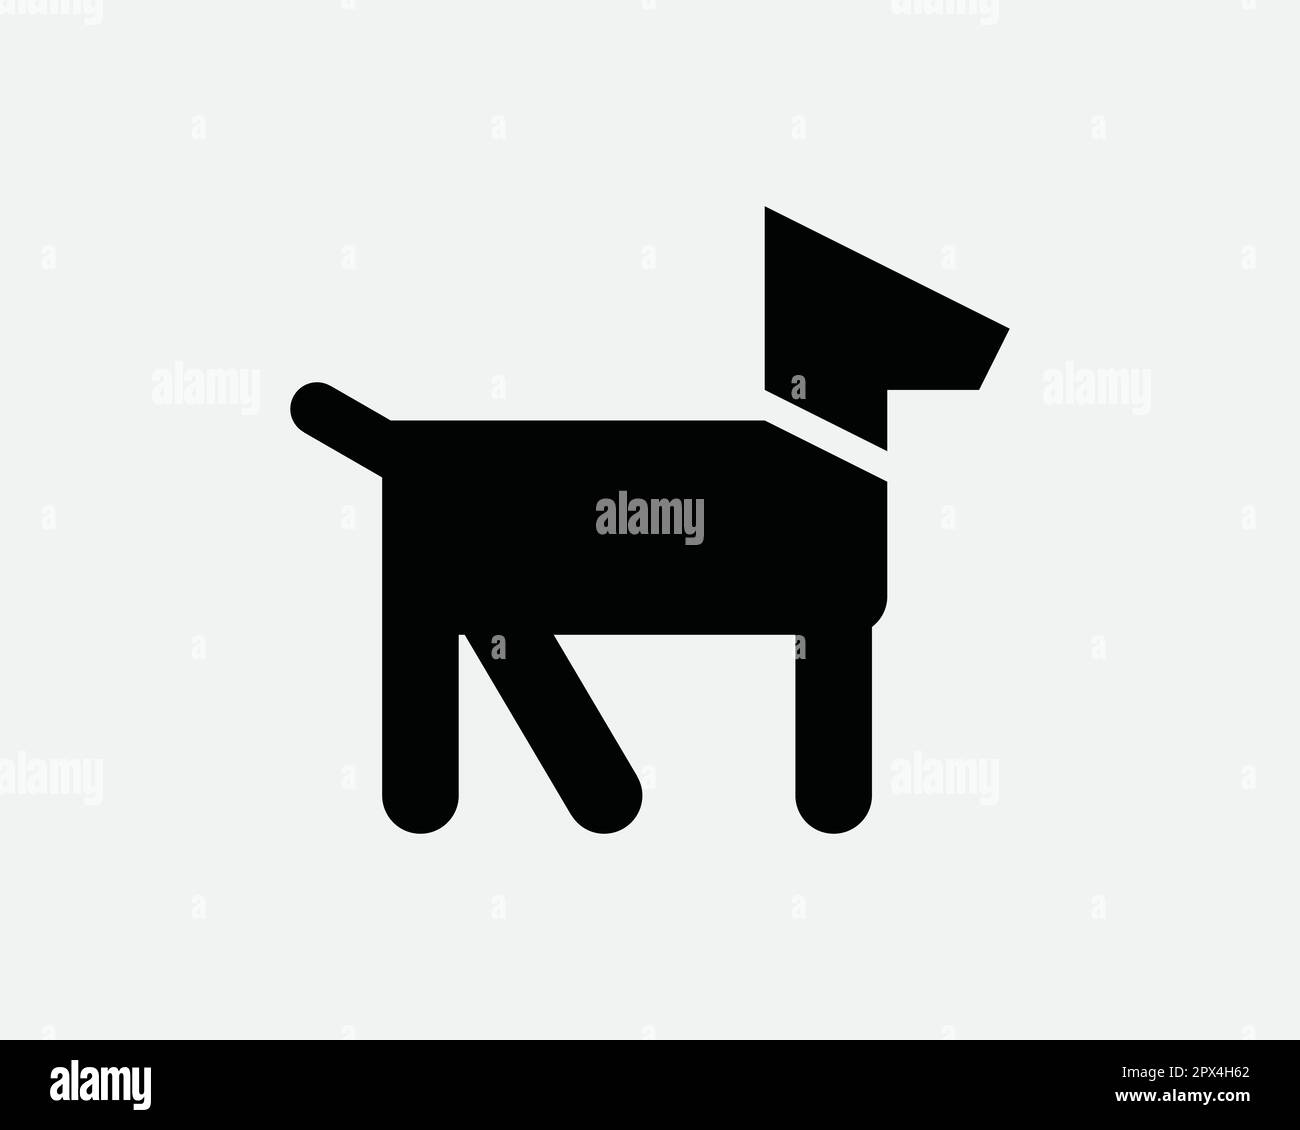 Hund Cartoon Icon Hündchen Hund Hund Hund Hund Hund Tier Ganzkörperständer Ständer Profil Zeichen Zeichen Vektor Grafik Clipart Cricut Cut Out Shap Stock Vektor